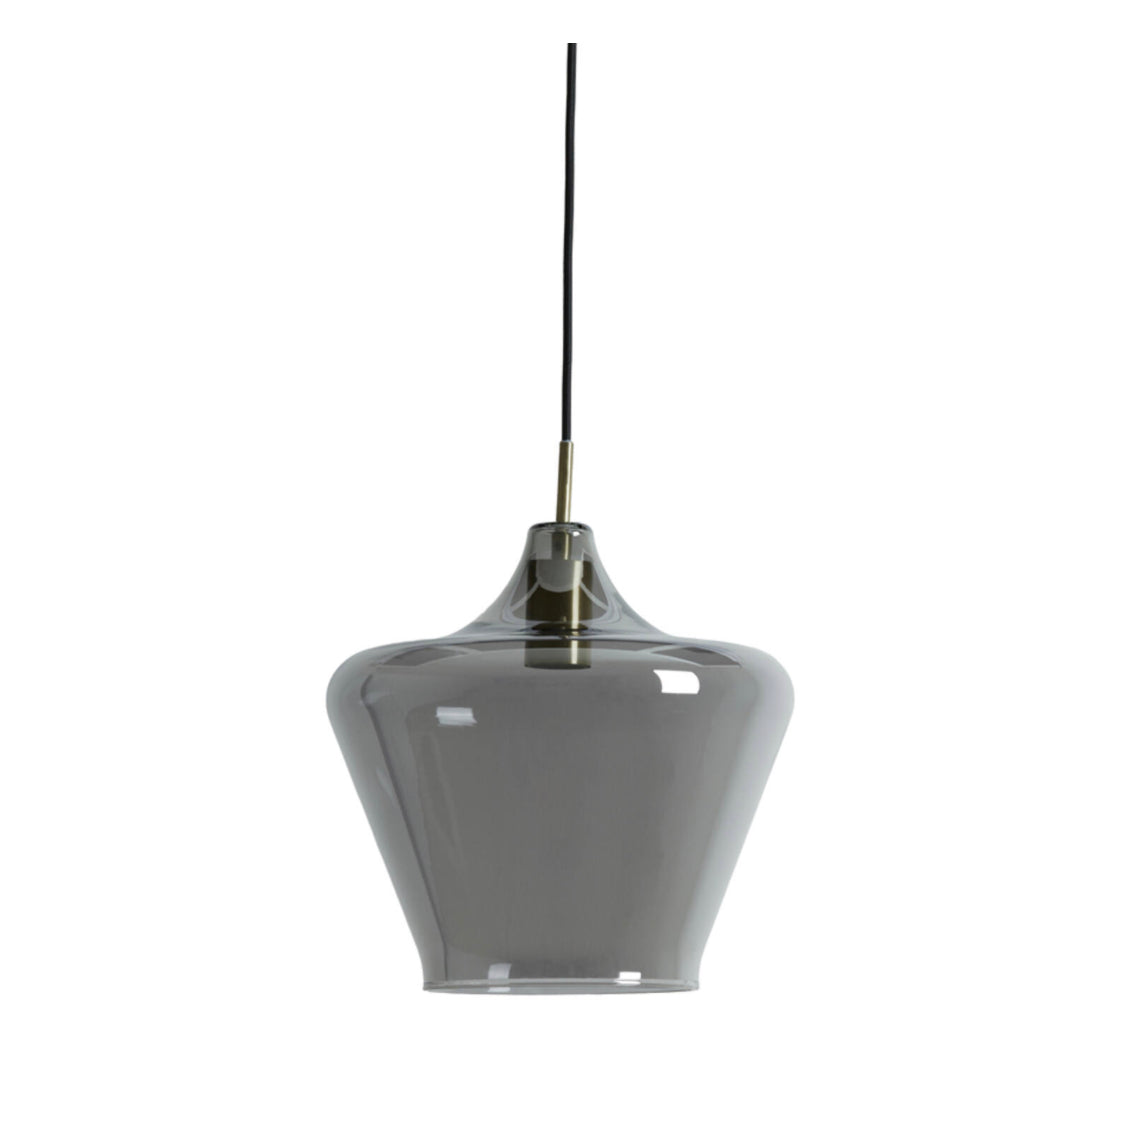 Solly S lampadario - hanging lamp